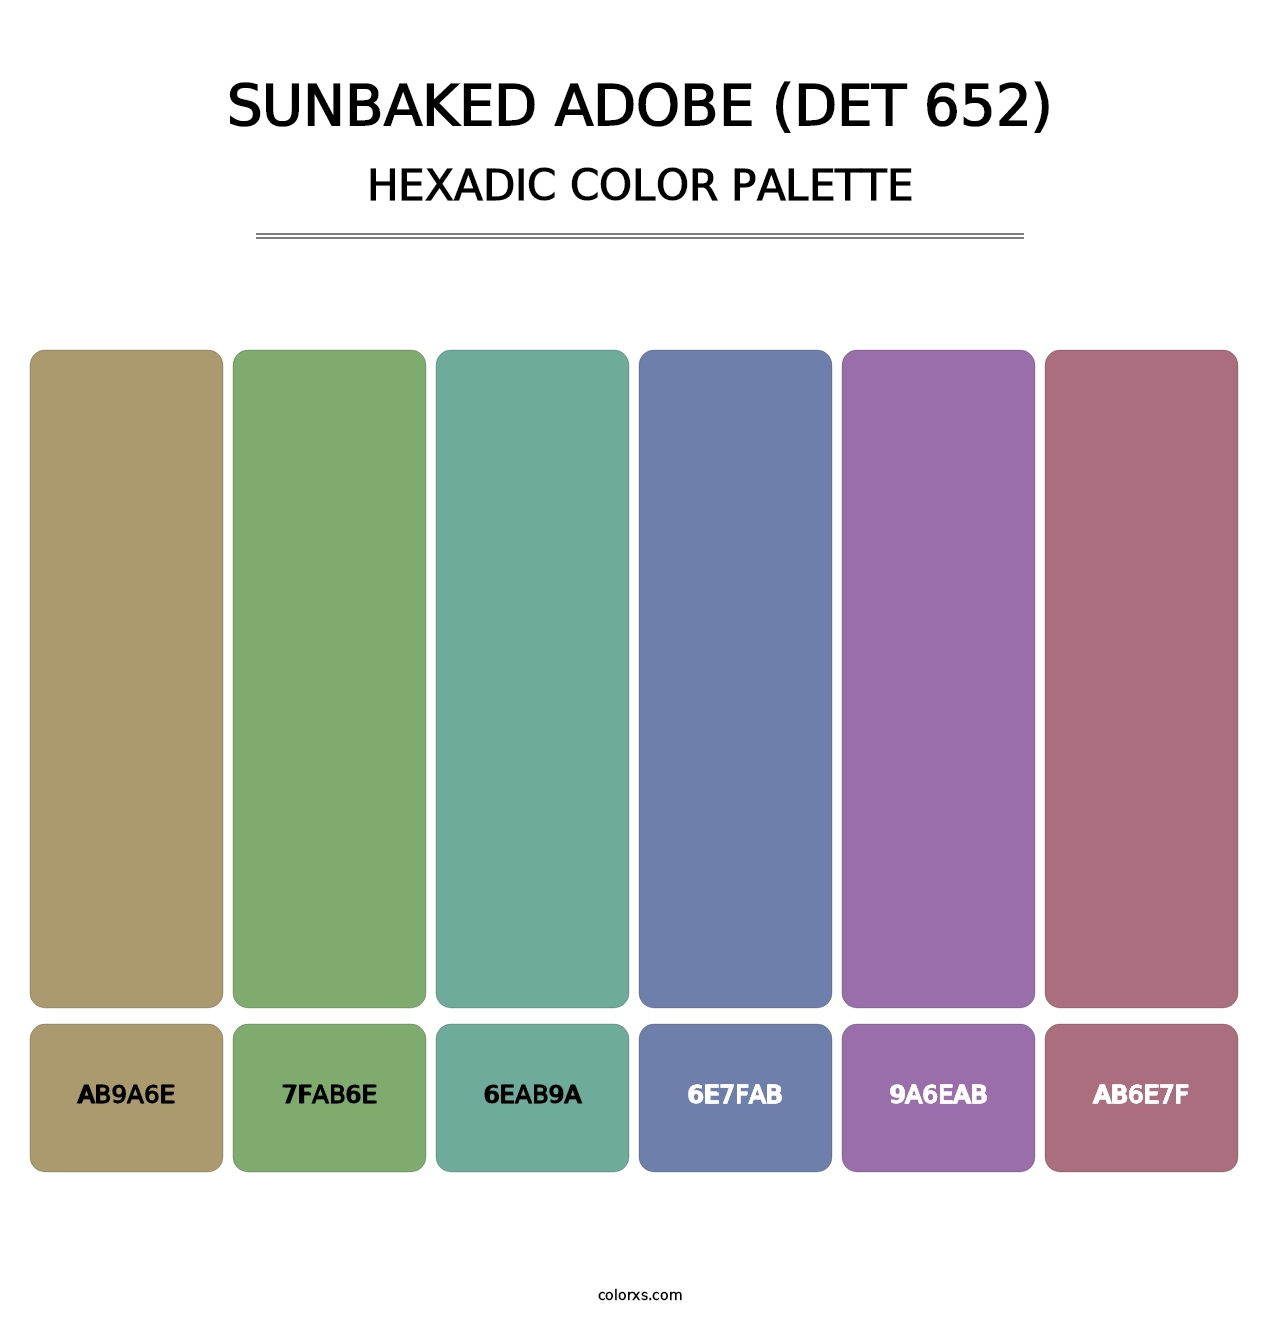 Sunbaked Adobe (DET 652) - Hexadic Color Palette